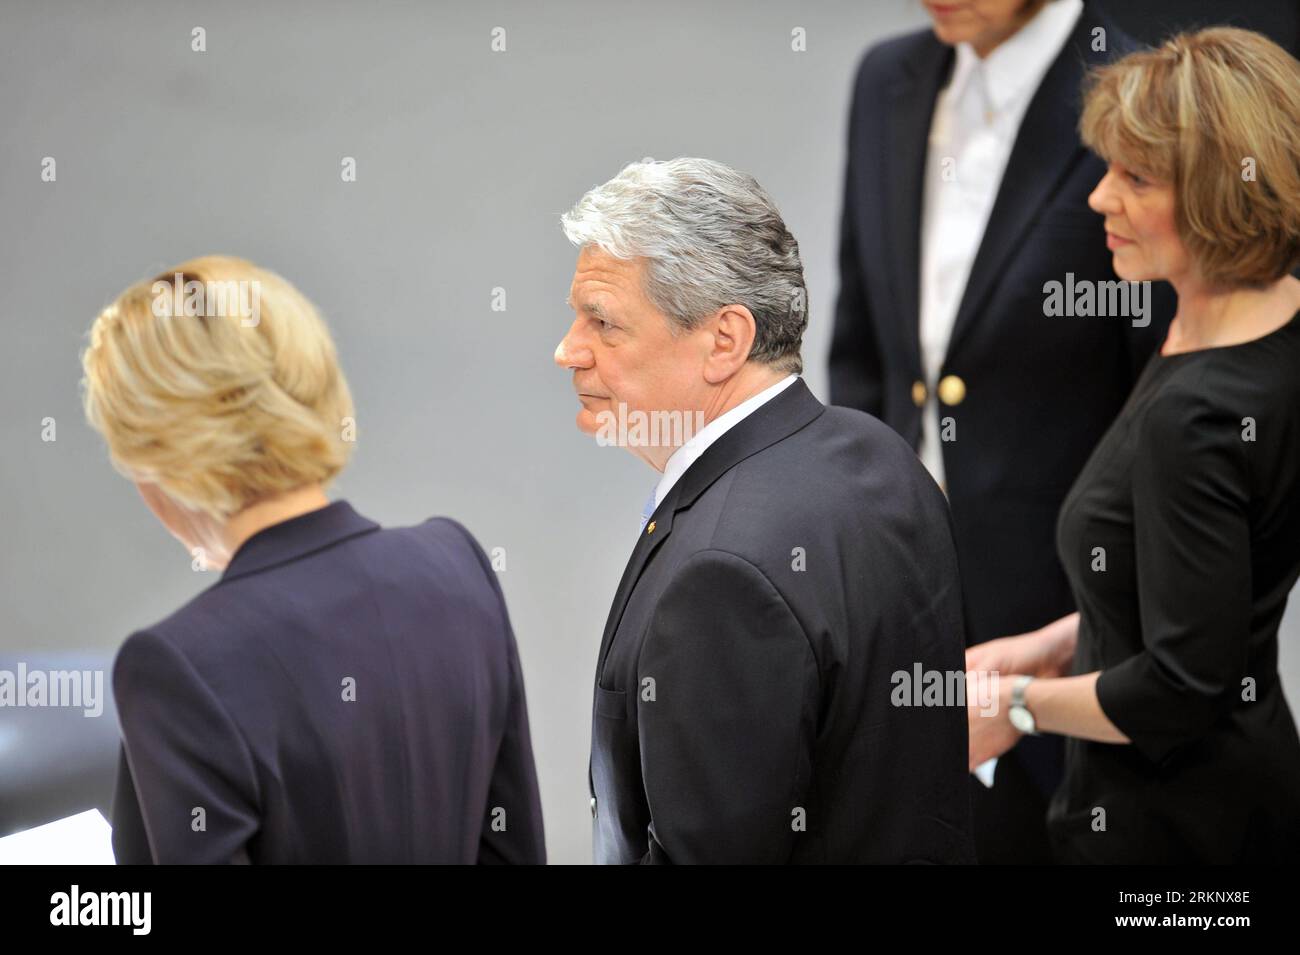 Bildnummer : 57617677 Datum : 23.03.2012 Copyright : imago/Xinhua (120323) -- BERLIN, le 23 mars 2012 (Xinhua) -- l'épouse de l'ancien président allemand Christian Wulff (L), le nouveau président allemand Joachim Gauck (C) et sa partenaire Daniela Schadt assistent à la cérémonie d'assermentation au Reichstag Building à Berlin, capitale de l'Allemagne, le 23 mars 2012. Gauke est devenu le 11e président du pays depuis la fin de la Seconde Guerre mondiale (Xinhua/Gonzalo Silva)(yt) ALLEMAGNE-PRÉSIDENT-PRESTATION DE SERMENT PUBLICATIONxNOTxINxCHN Politik People GER Bundespräsident x1x xub Vereidigung 2012 quer premiumd o0 Familie, privé, Frau 5 Banque D'Images